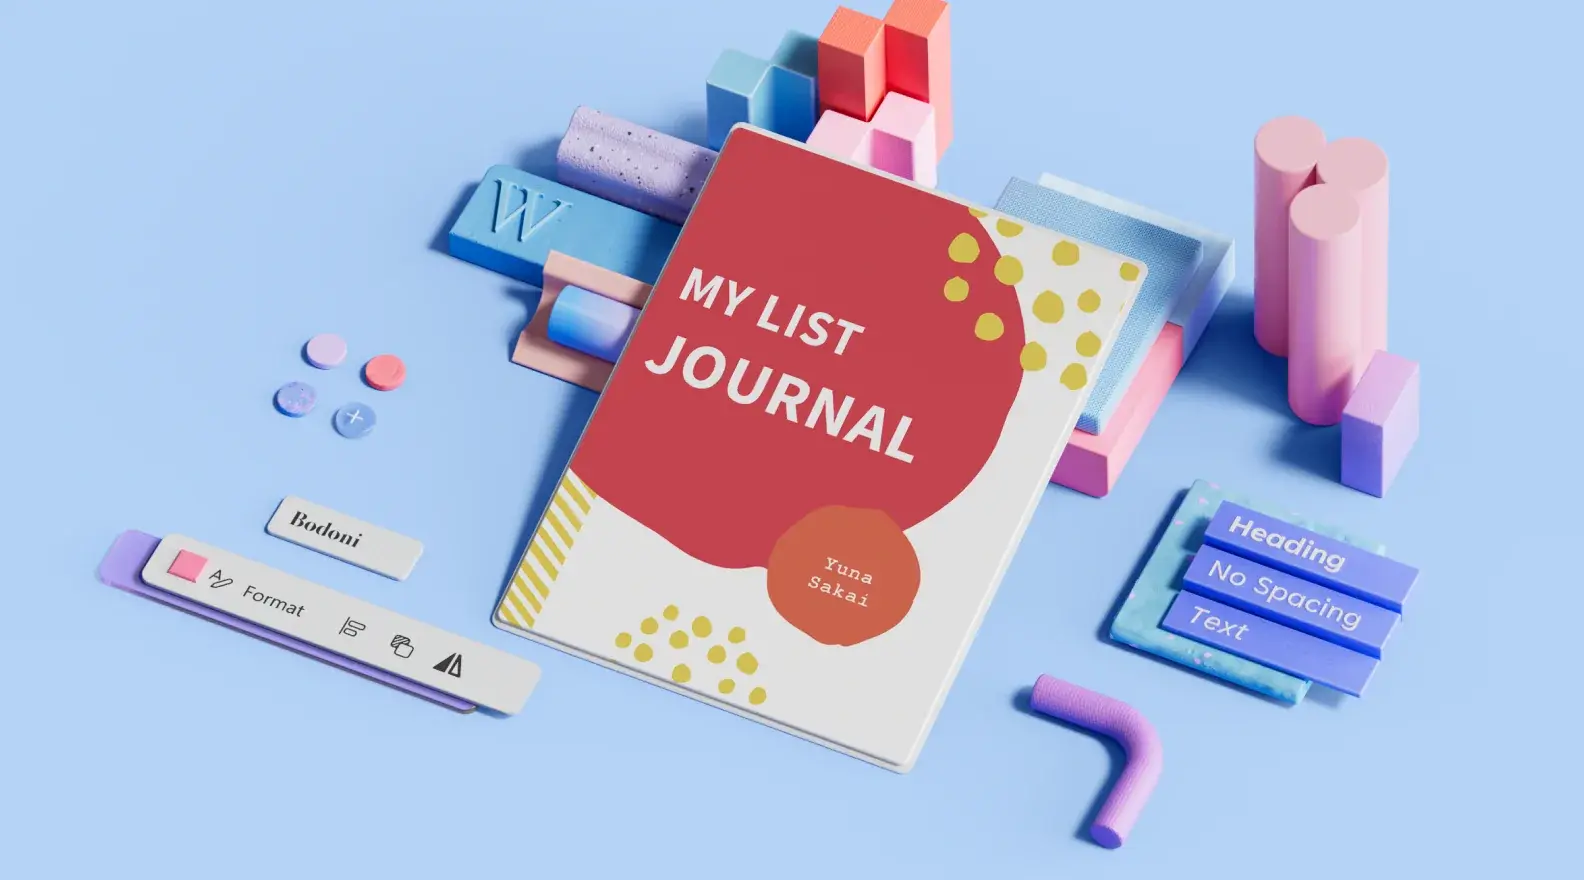 Șablon de jurnal sub formă de listă, înconjurat de elemente de design 3D